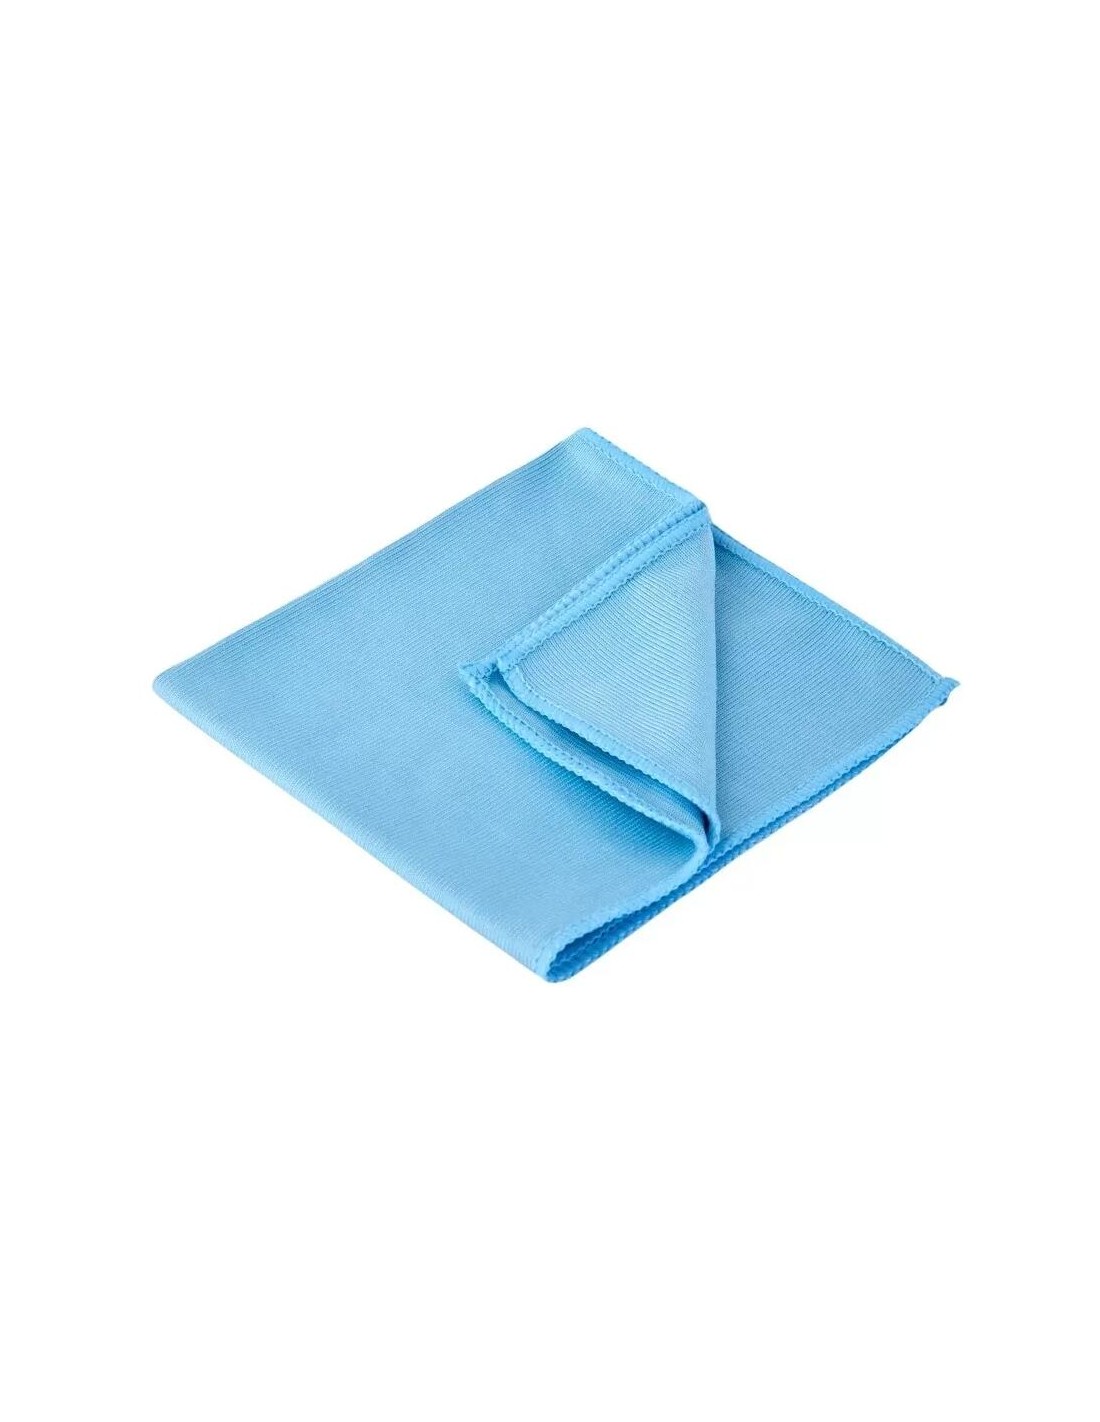 Laveta din microfibra pentru sters geamuri, 30 cm x 40 cm, albastru